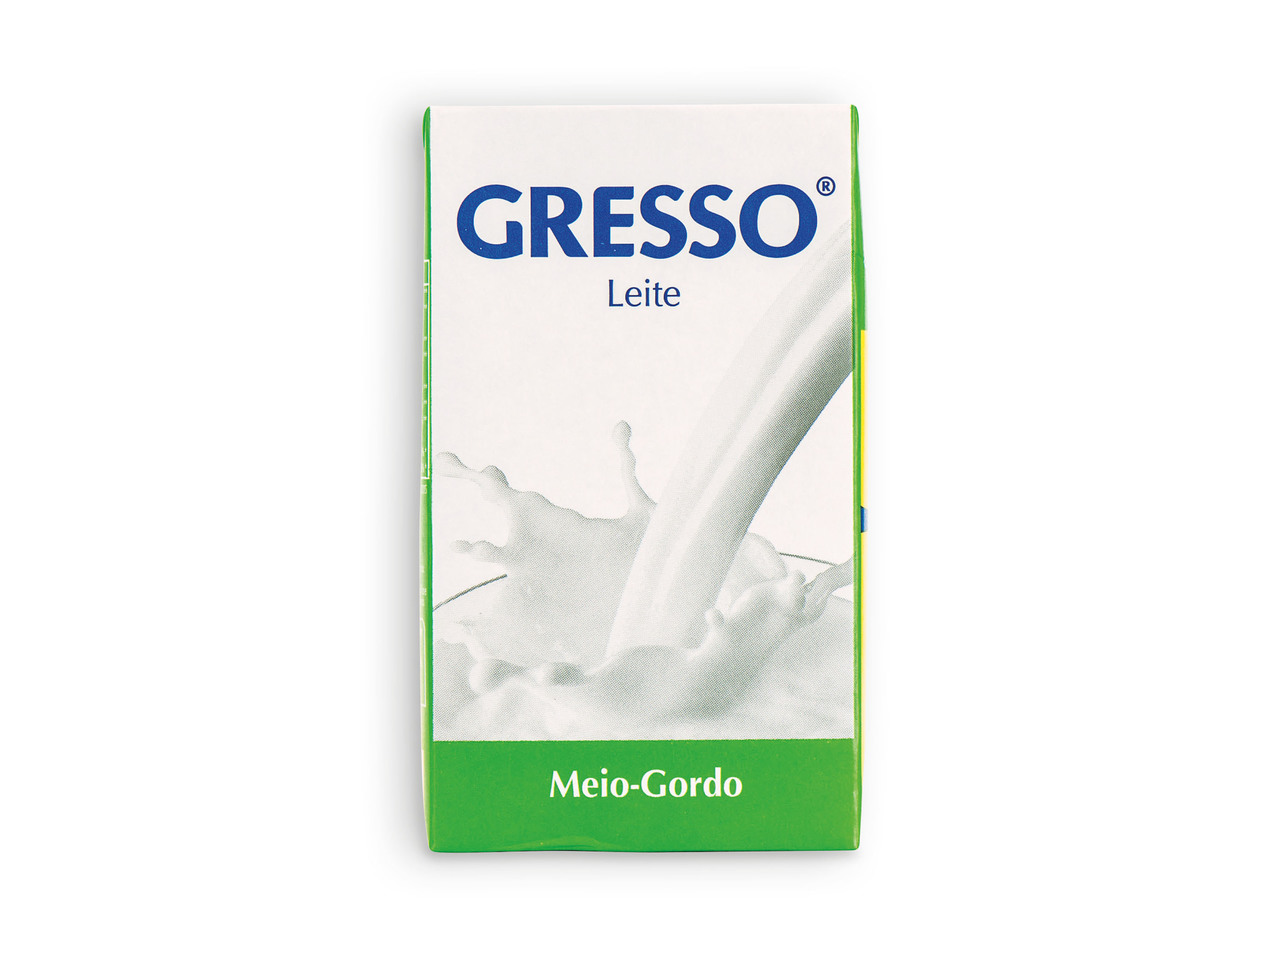 GRESSO(R) Leite Meio-gordo